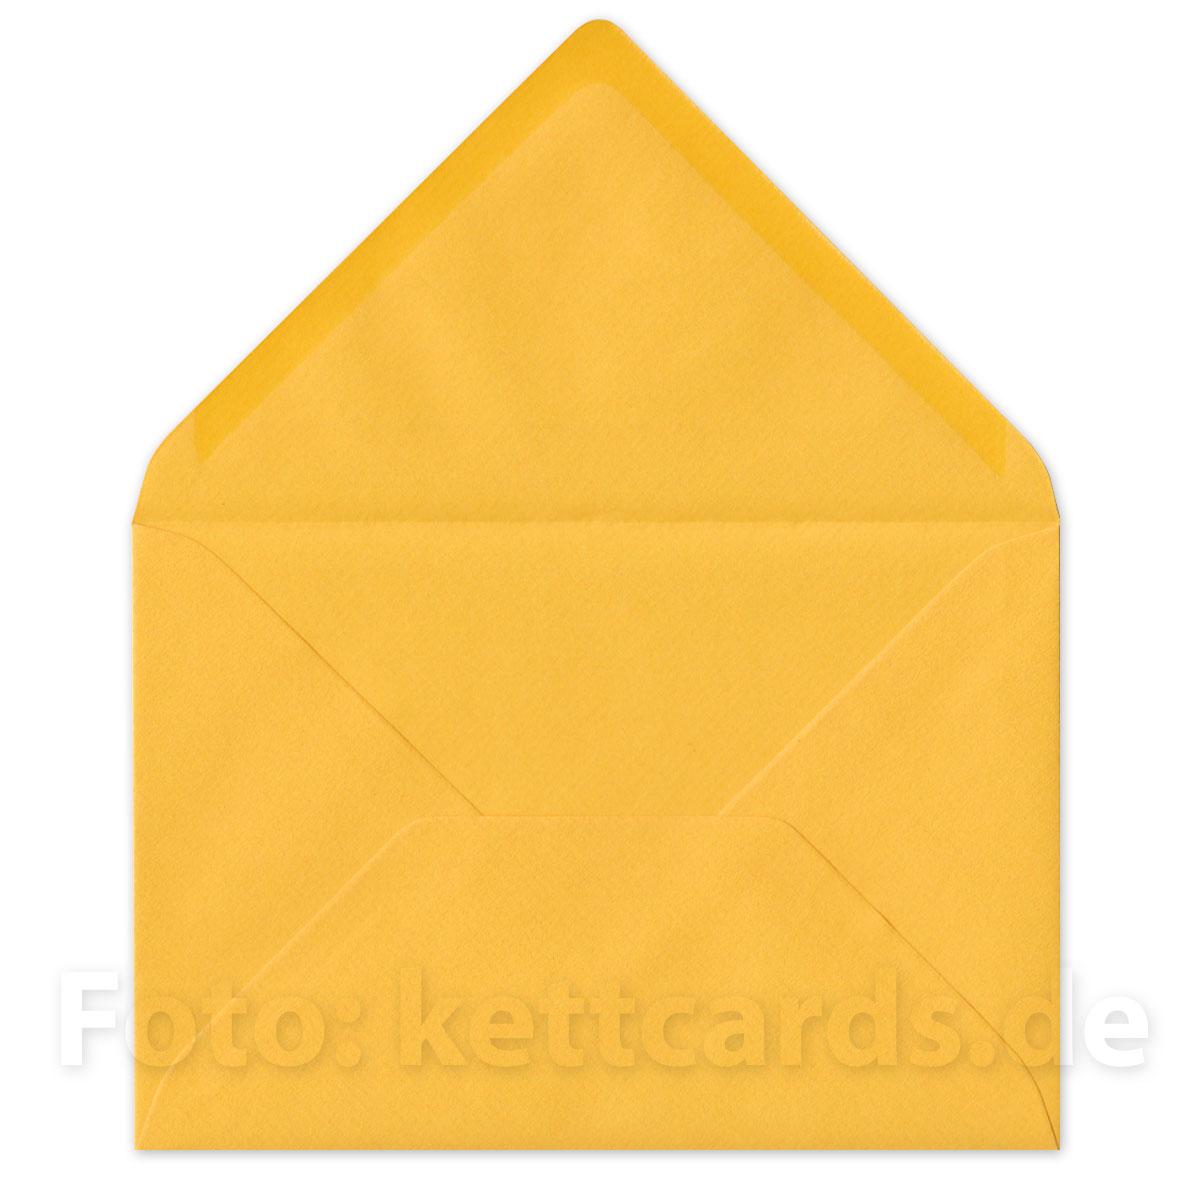 10 pinke Weihnachtskarten mit gelben Kuverts: Engelskopf